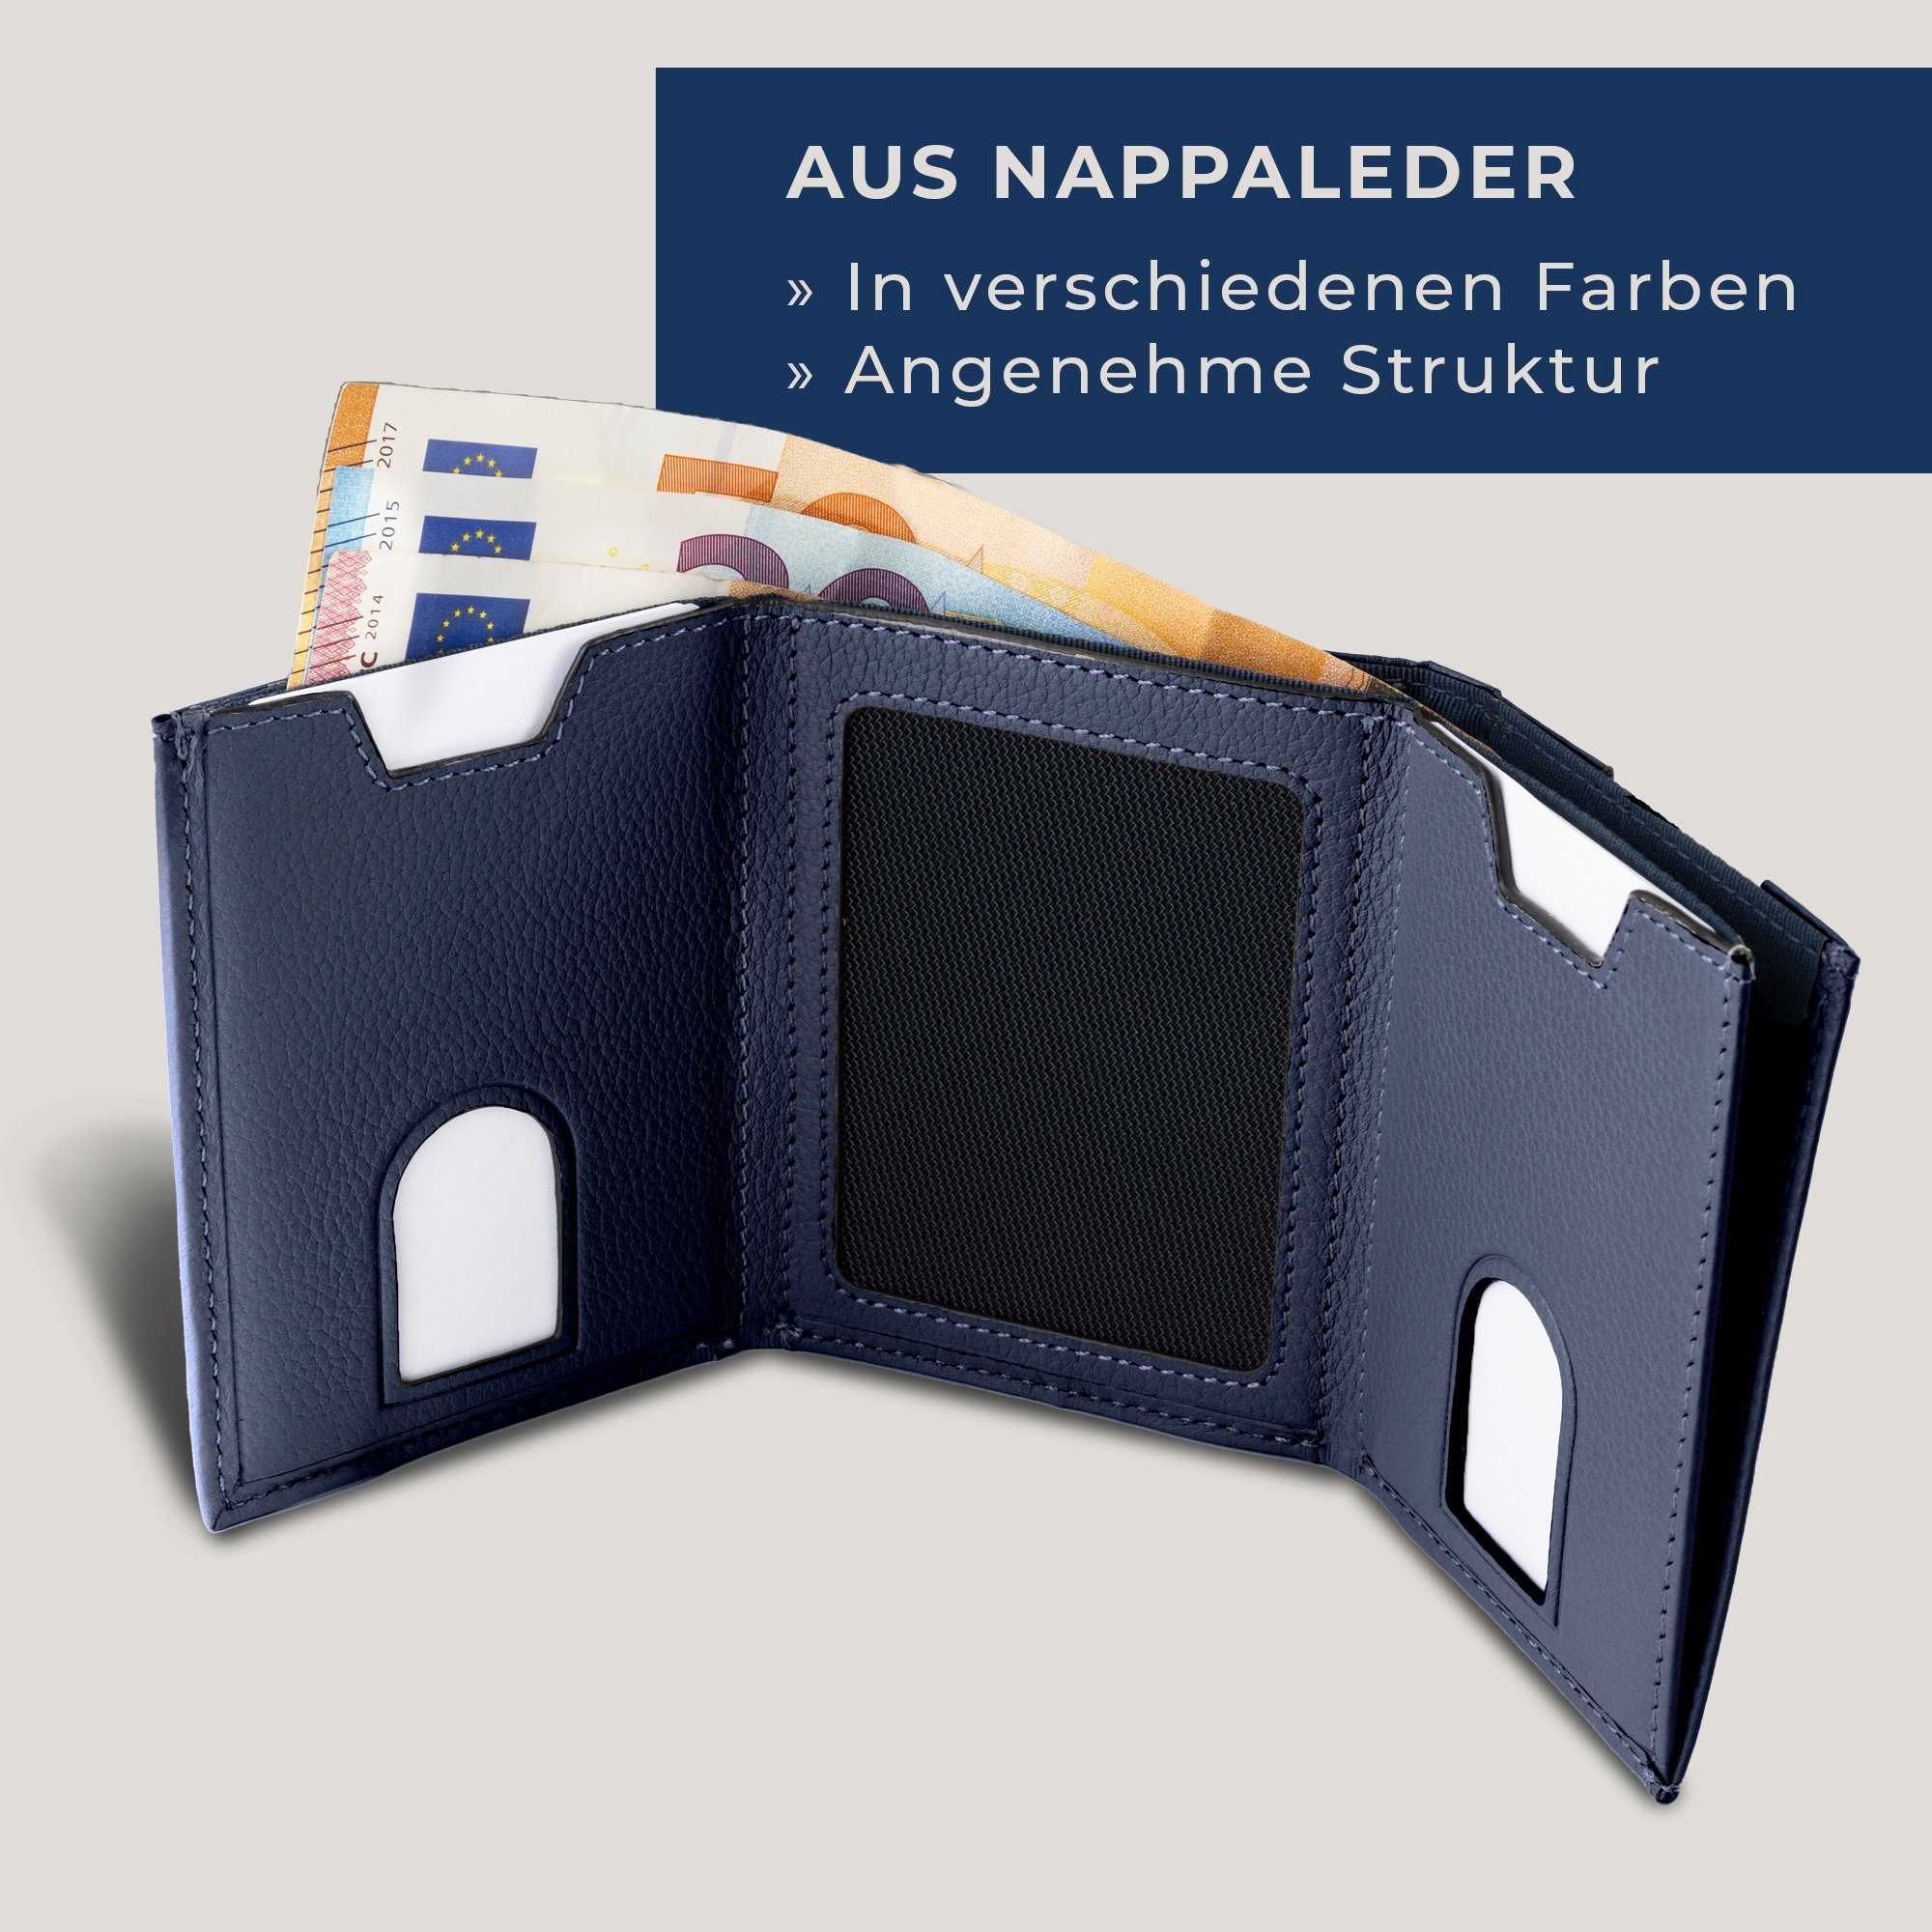 VON HEESEN Geldbörse Whizz & Wallet Slim RFID-Schutz Blau mit 6 Wallet Portemonnaie Kartenfächer, inkl. Geldbeutel Geschenkbox